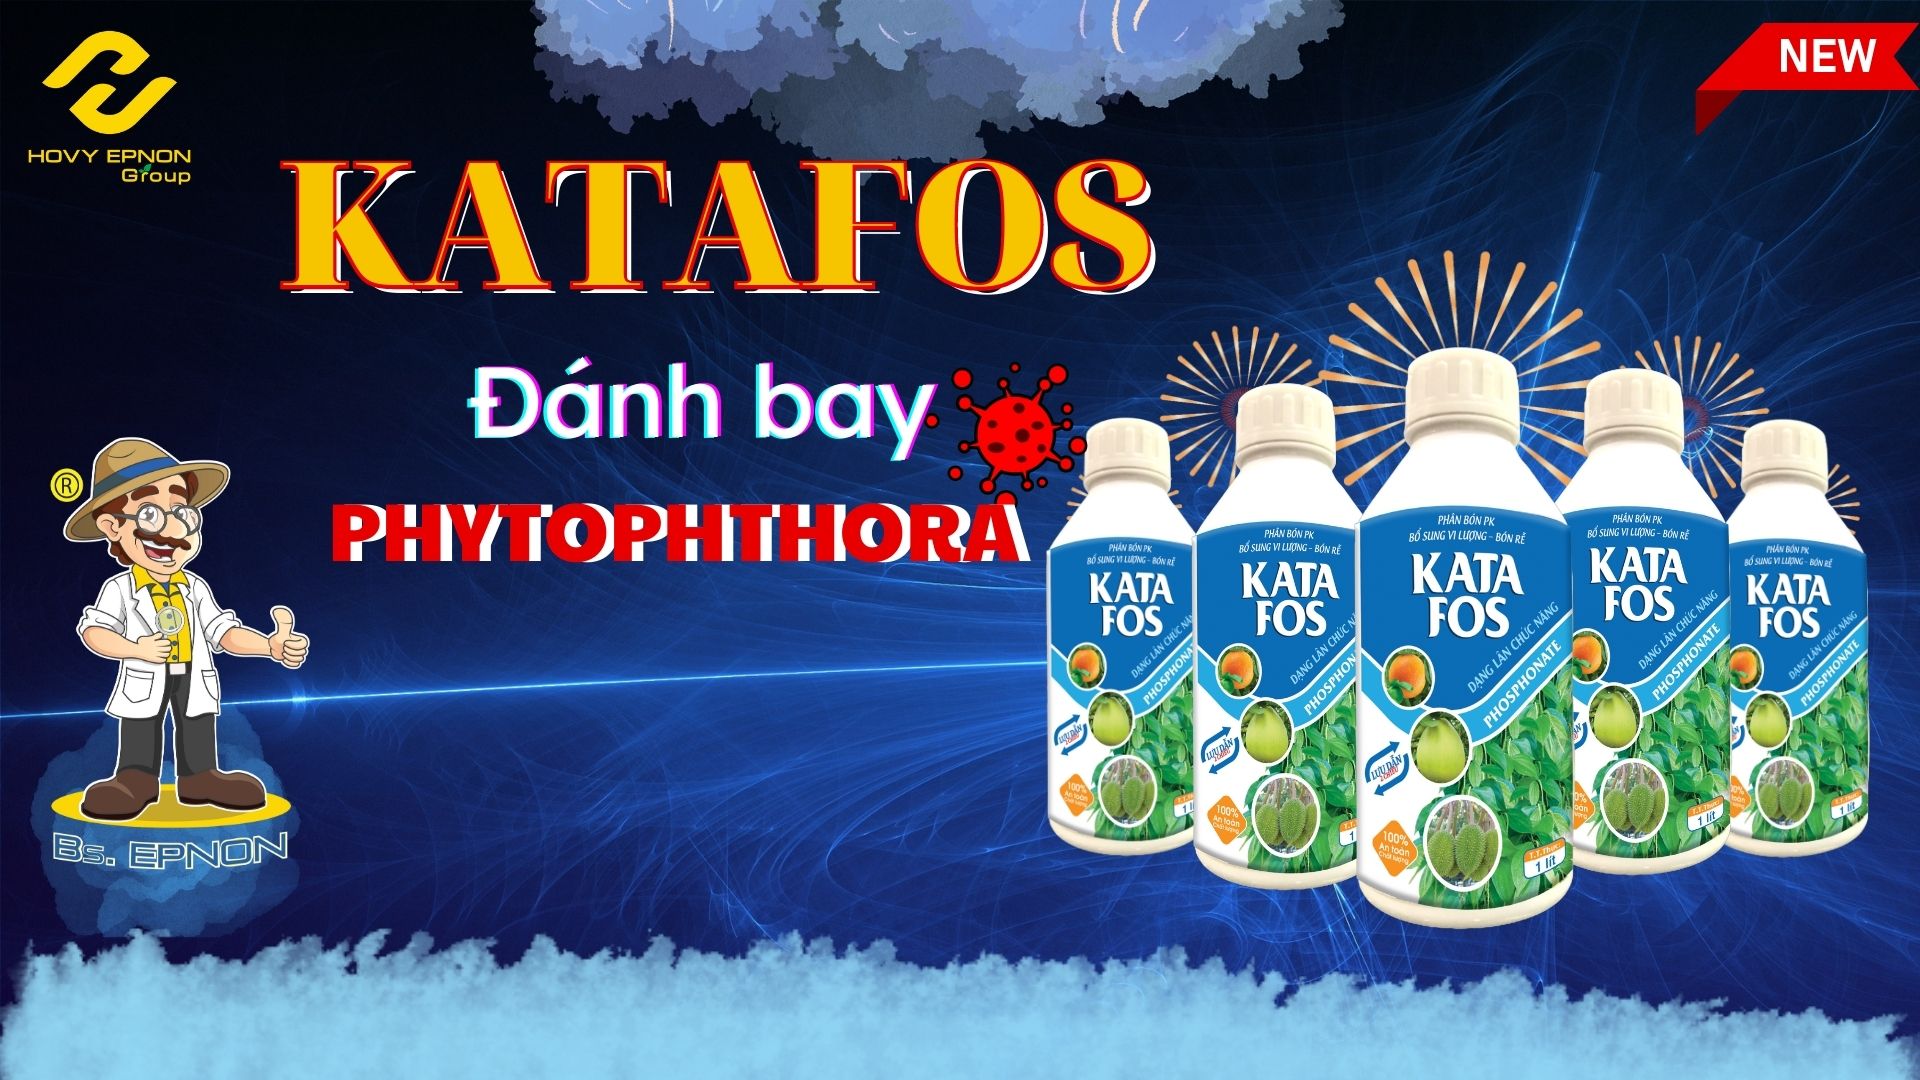 San-pham-KATAFOS